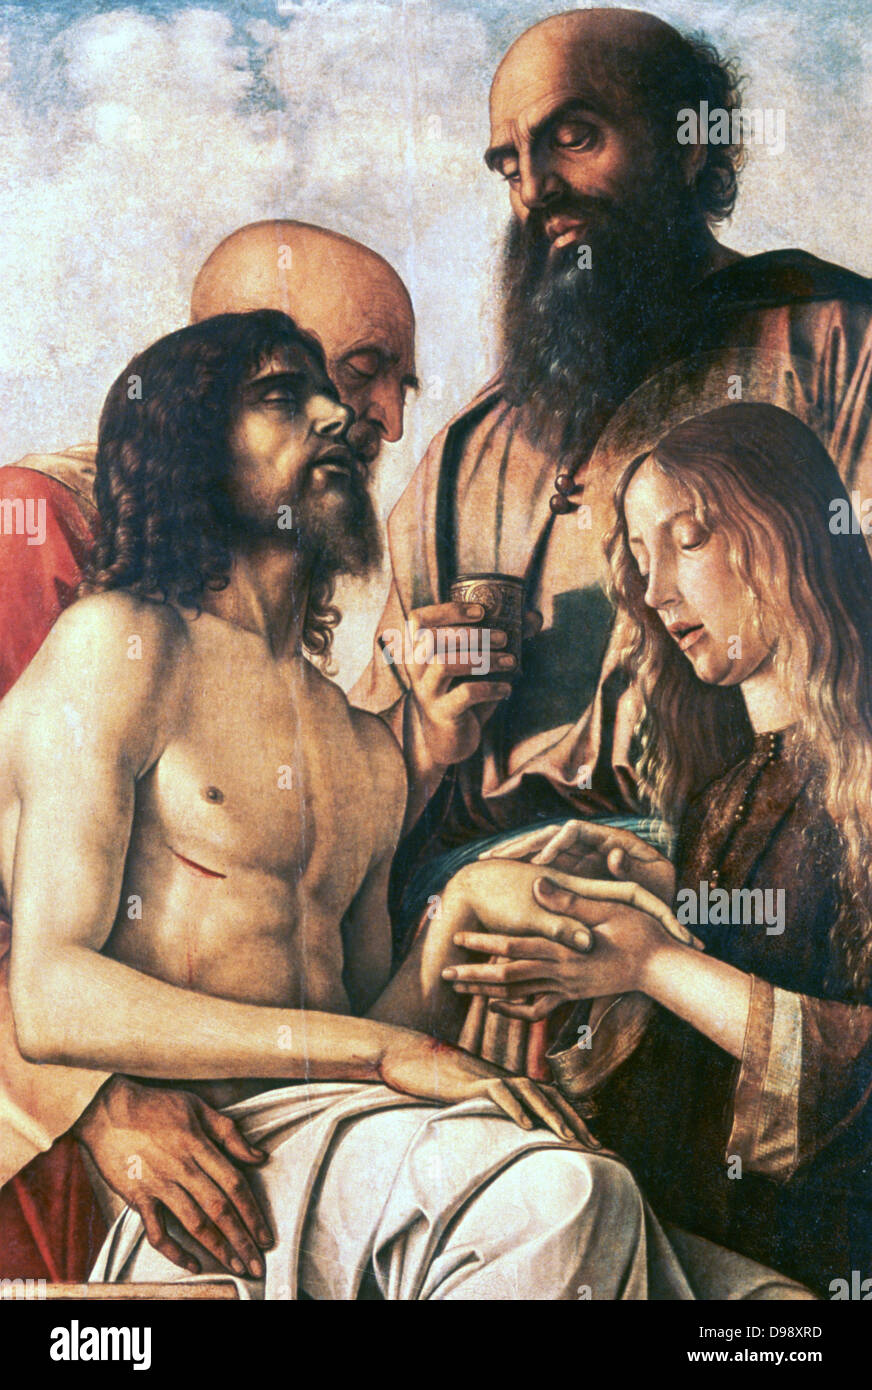 Pieta', Öl auf Leinwand. Giovanni Bellini (1426-1516) Maler der italienischen Renaissance. Mouring über den Leib Christi vor seiner Grablegung. Tod Trauer Stockfoto